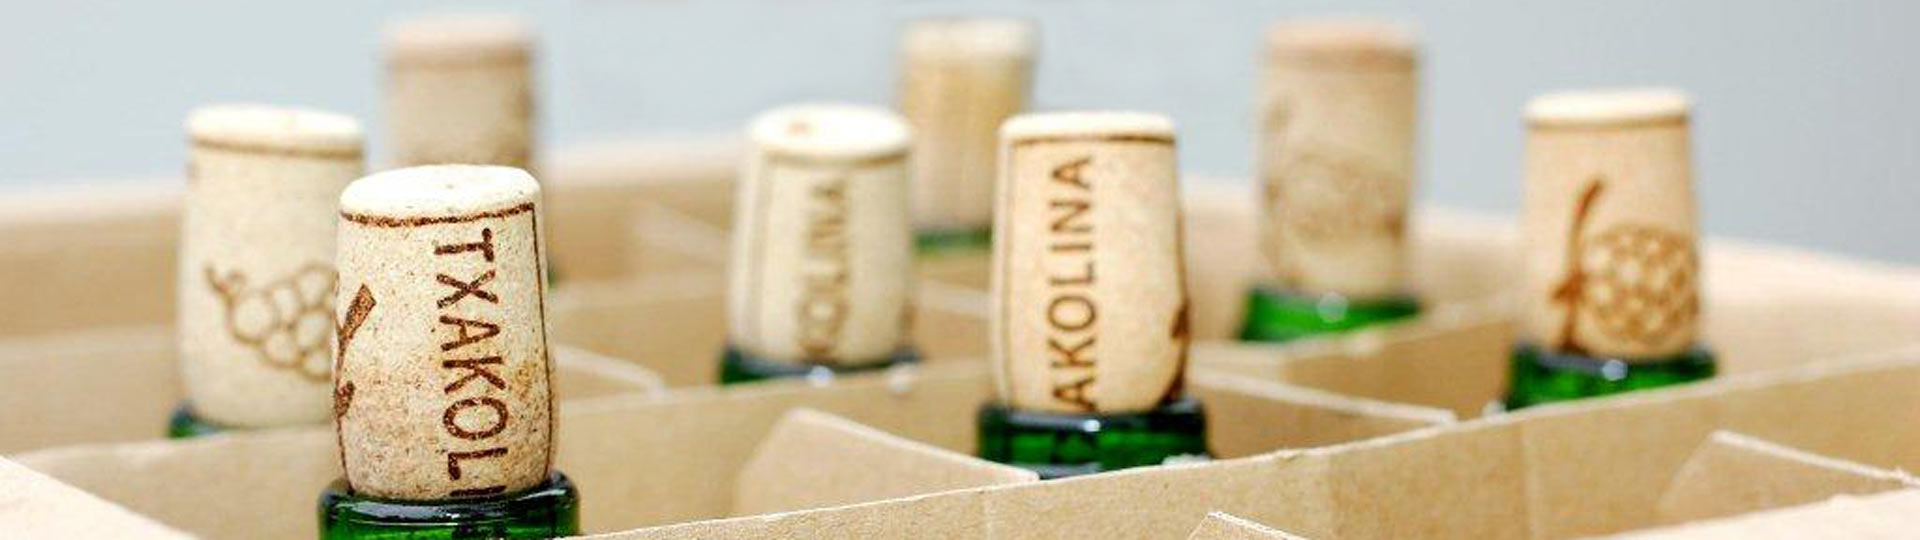 Corks from Txakoli bottles